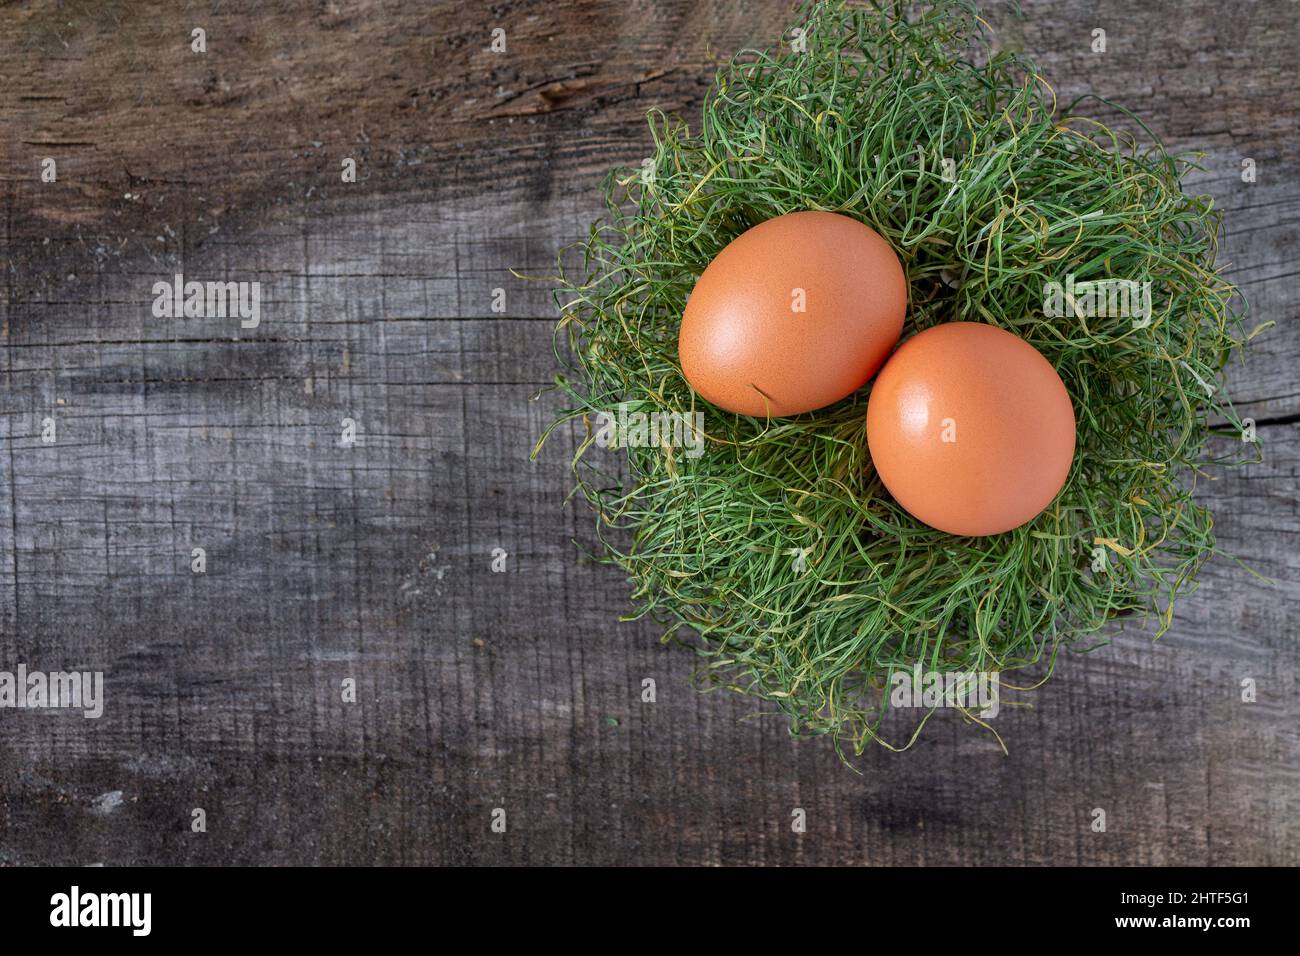 Zwei Hühnereier liegen in einem Nest aus trockenem Gras auf einem alten Holzflo Stockfoto